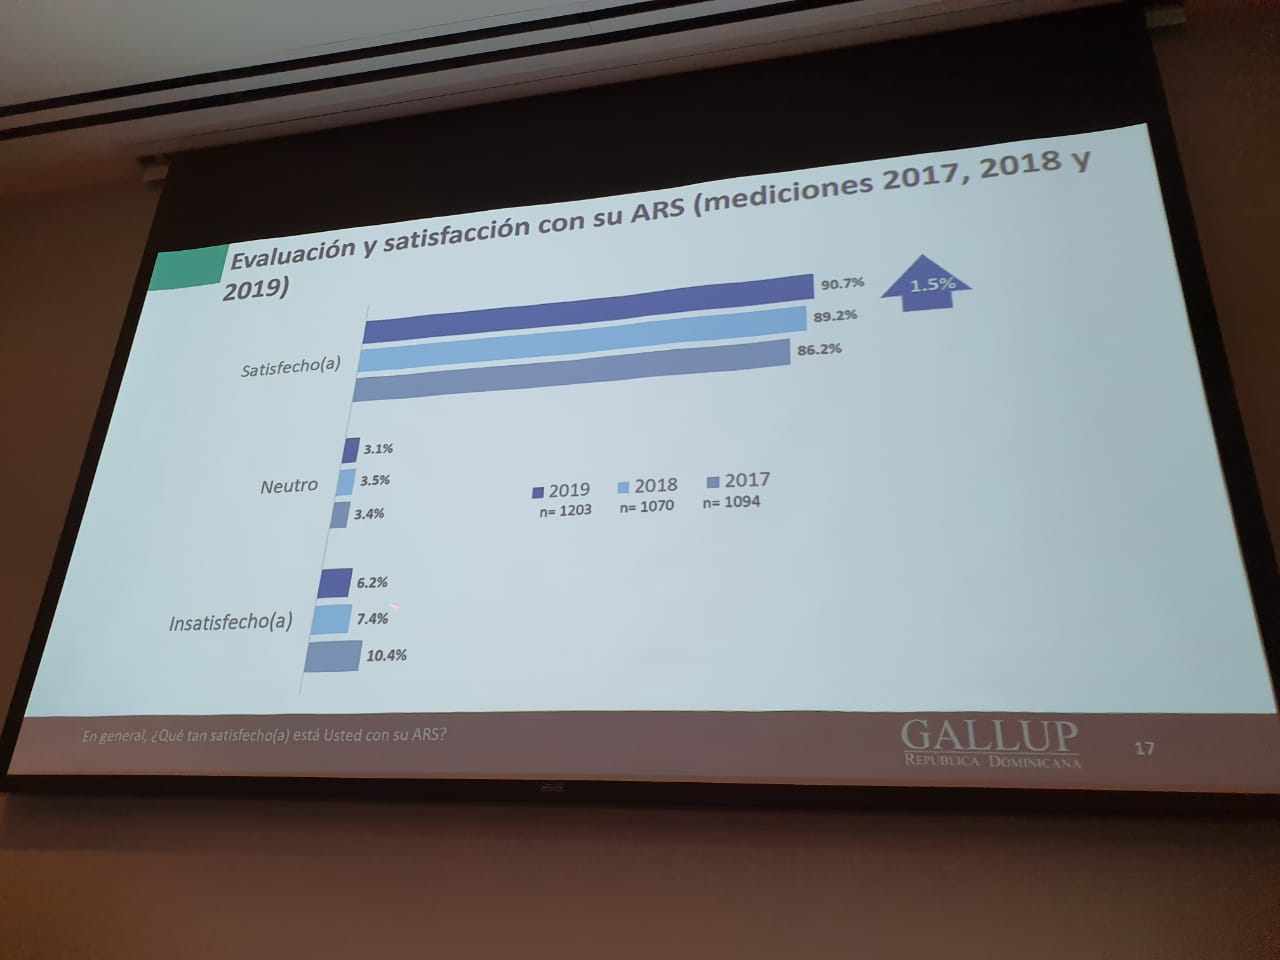 (Video): Gallup revela 90.7% de afiliados a ARS de ADARS está satisfecha con los servicios que recibe